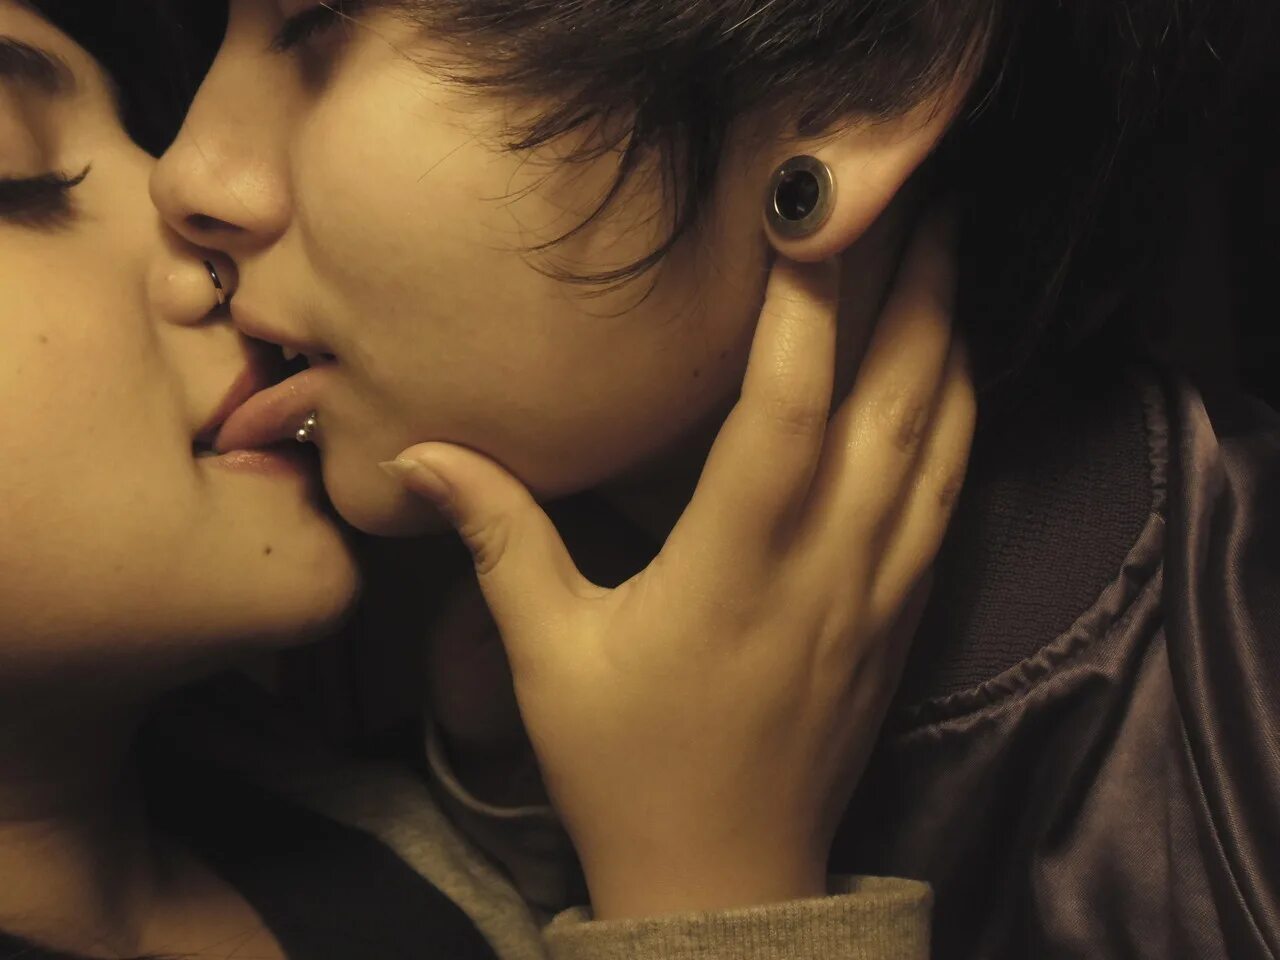 Lesbi face. Подростковый поцелуй с языком. Поцелуй в засос. Поцелуй девушек взасос.